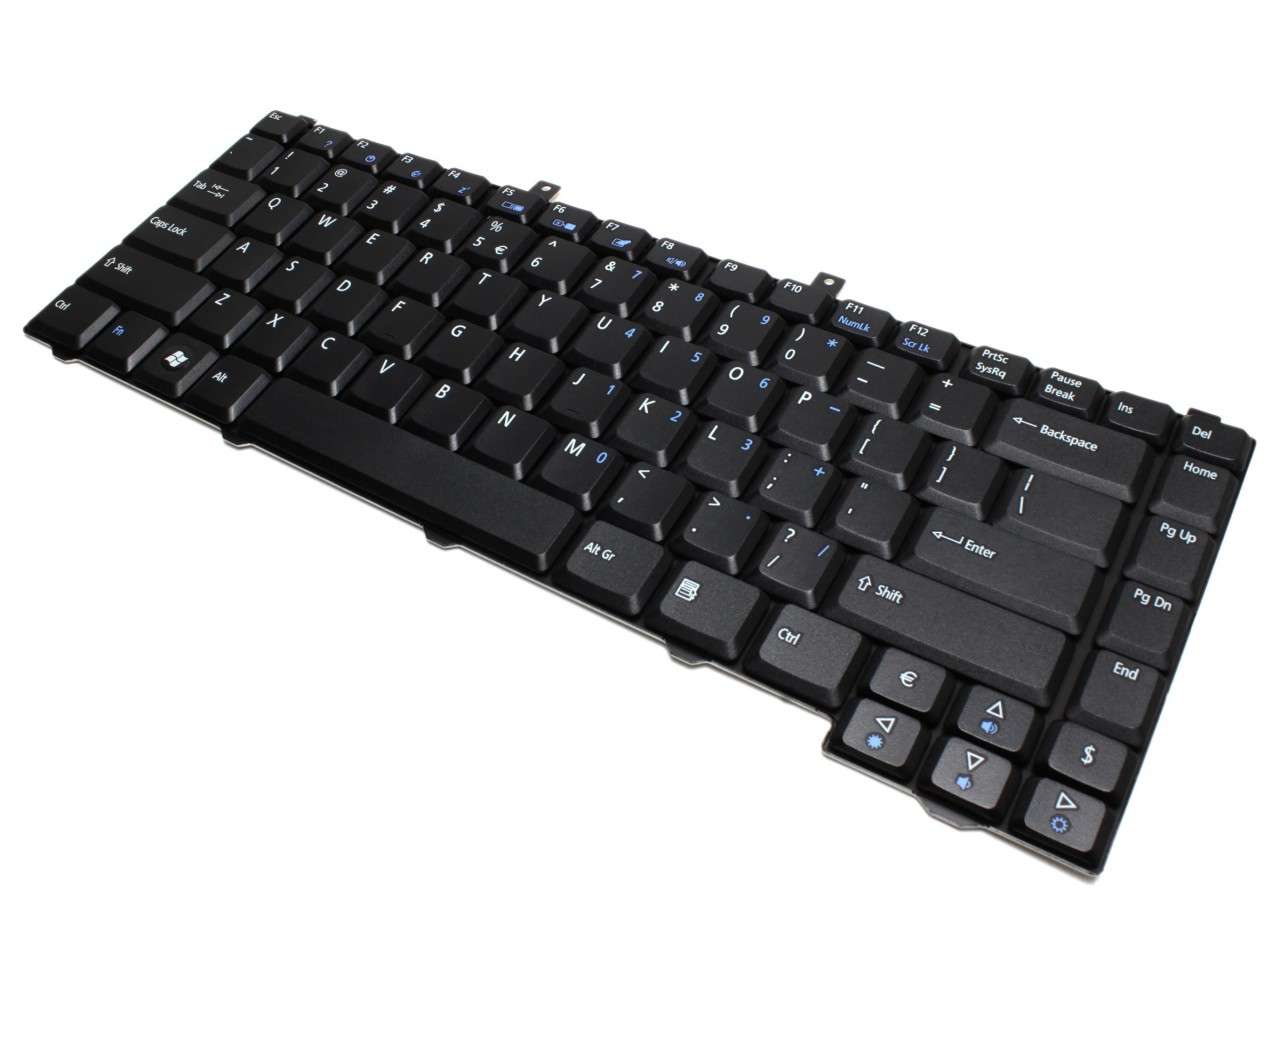 Tastatura Acer Aspire 5613WLMi